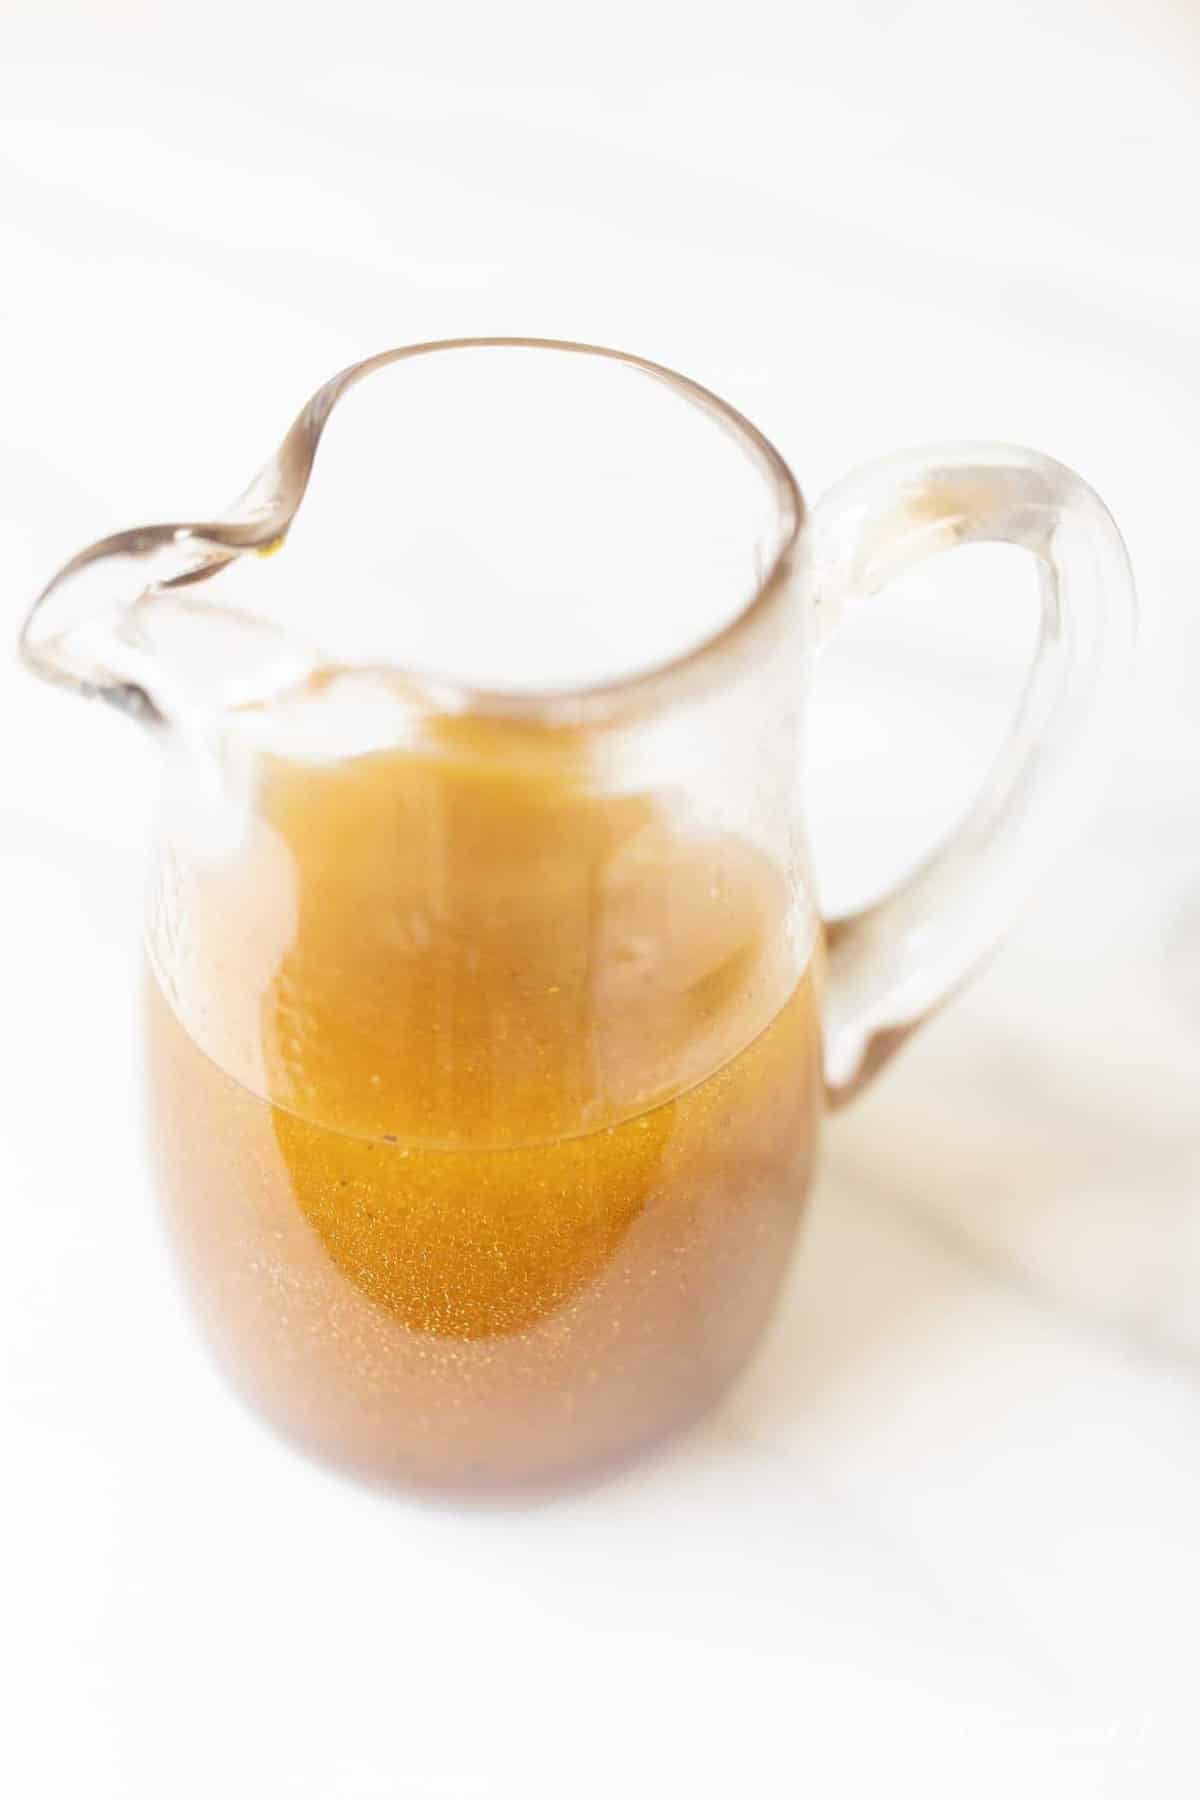 大理石表面有一个小罐装满了一个简单的自制醋汁配方。